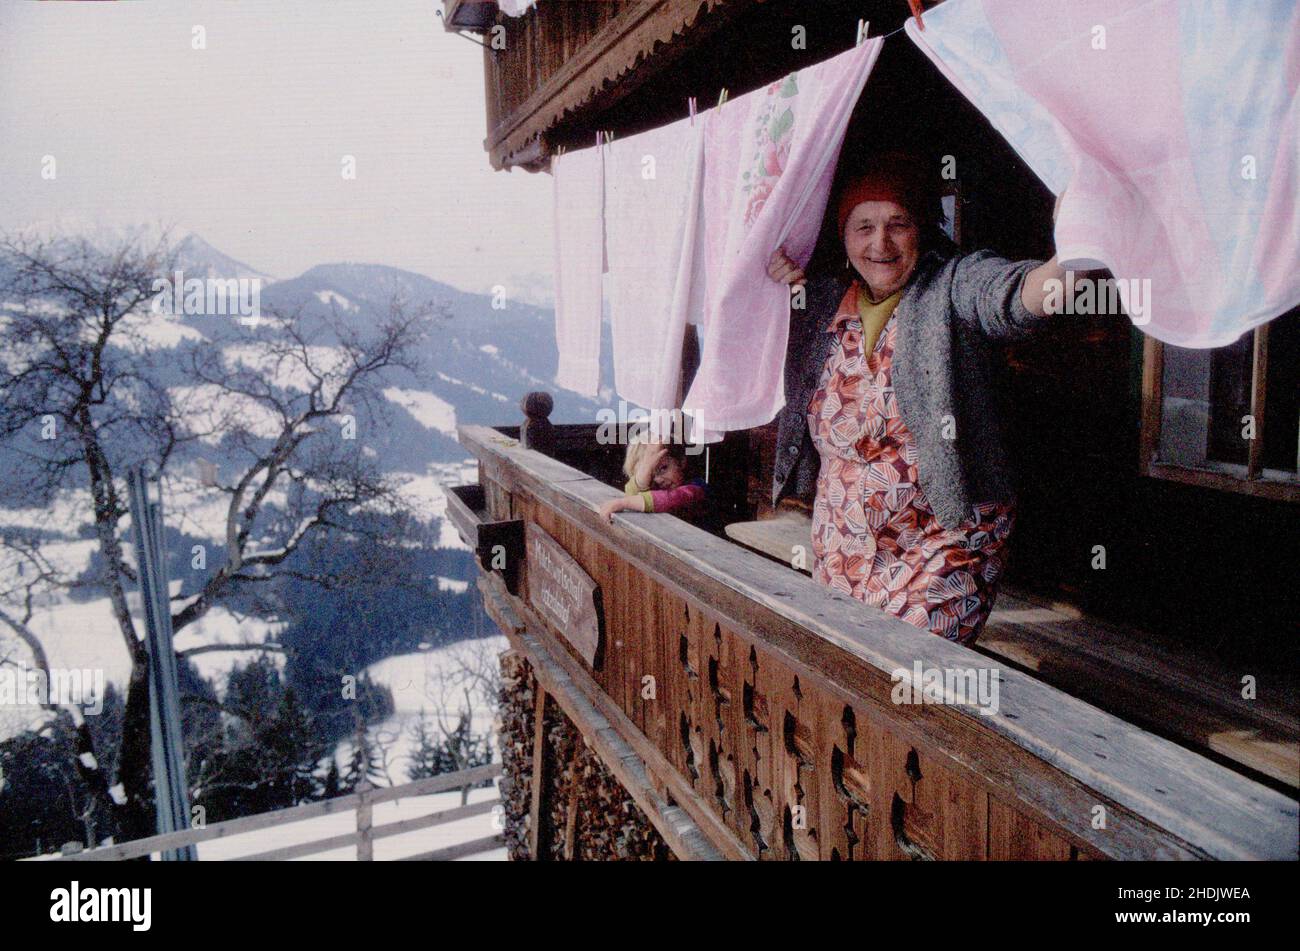 Ältere Dame, die ihre Wäsche online waschen lässt. Reife Frau hängt die Wäsche vor ihrem Haus in den alpen an der Linie. Frau schaut durch die Kleidung Stockfoto